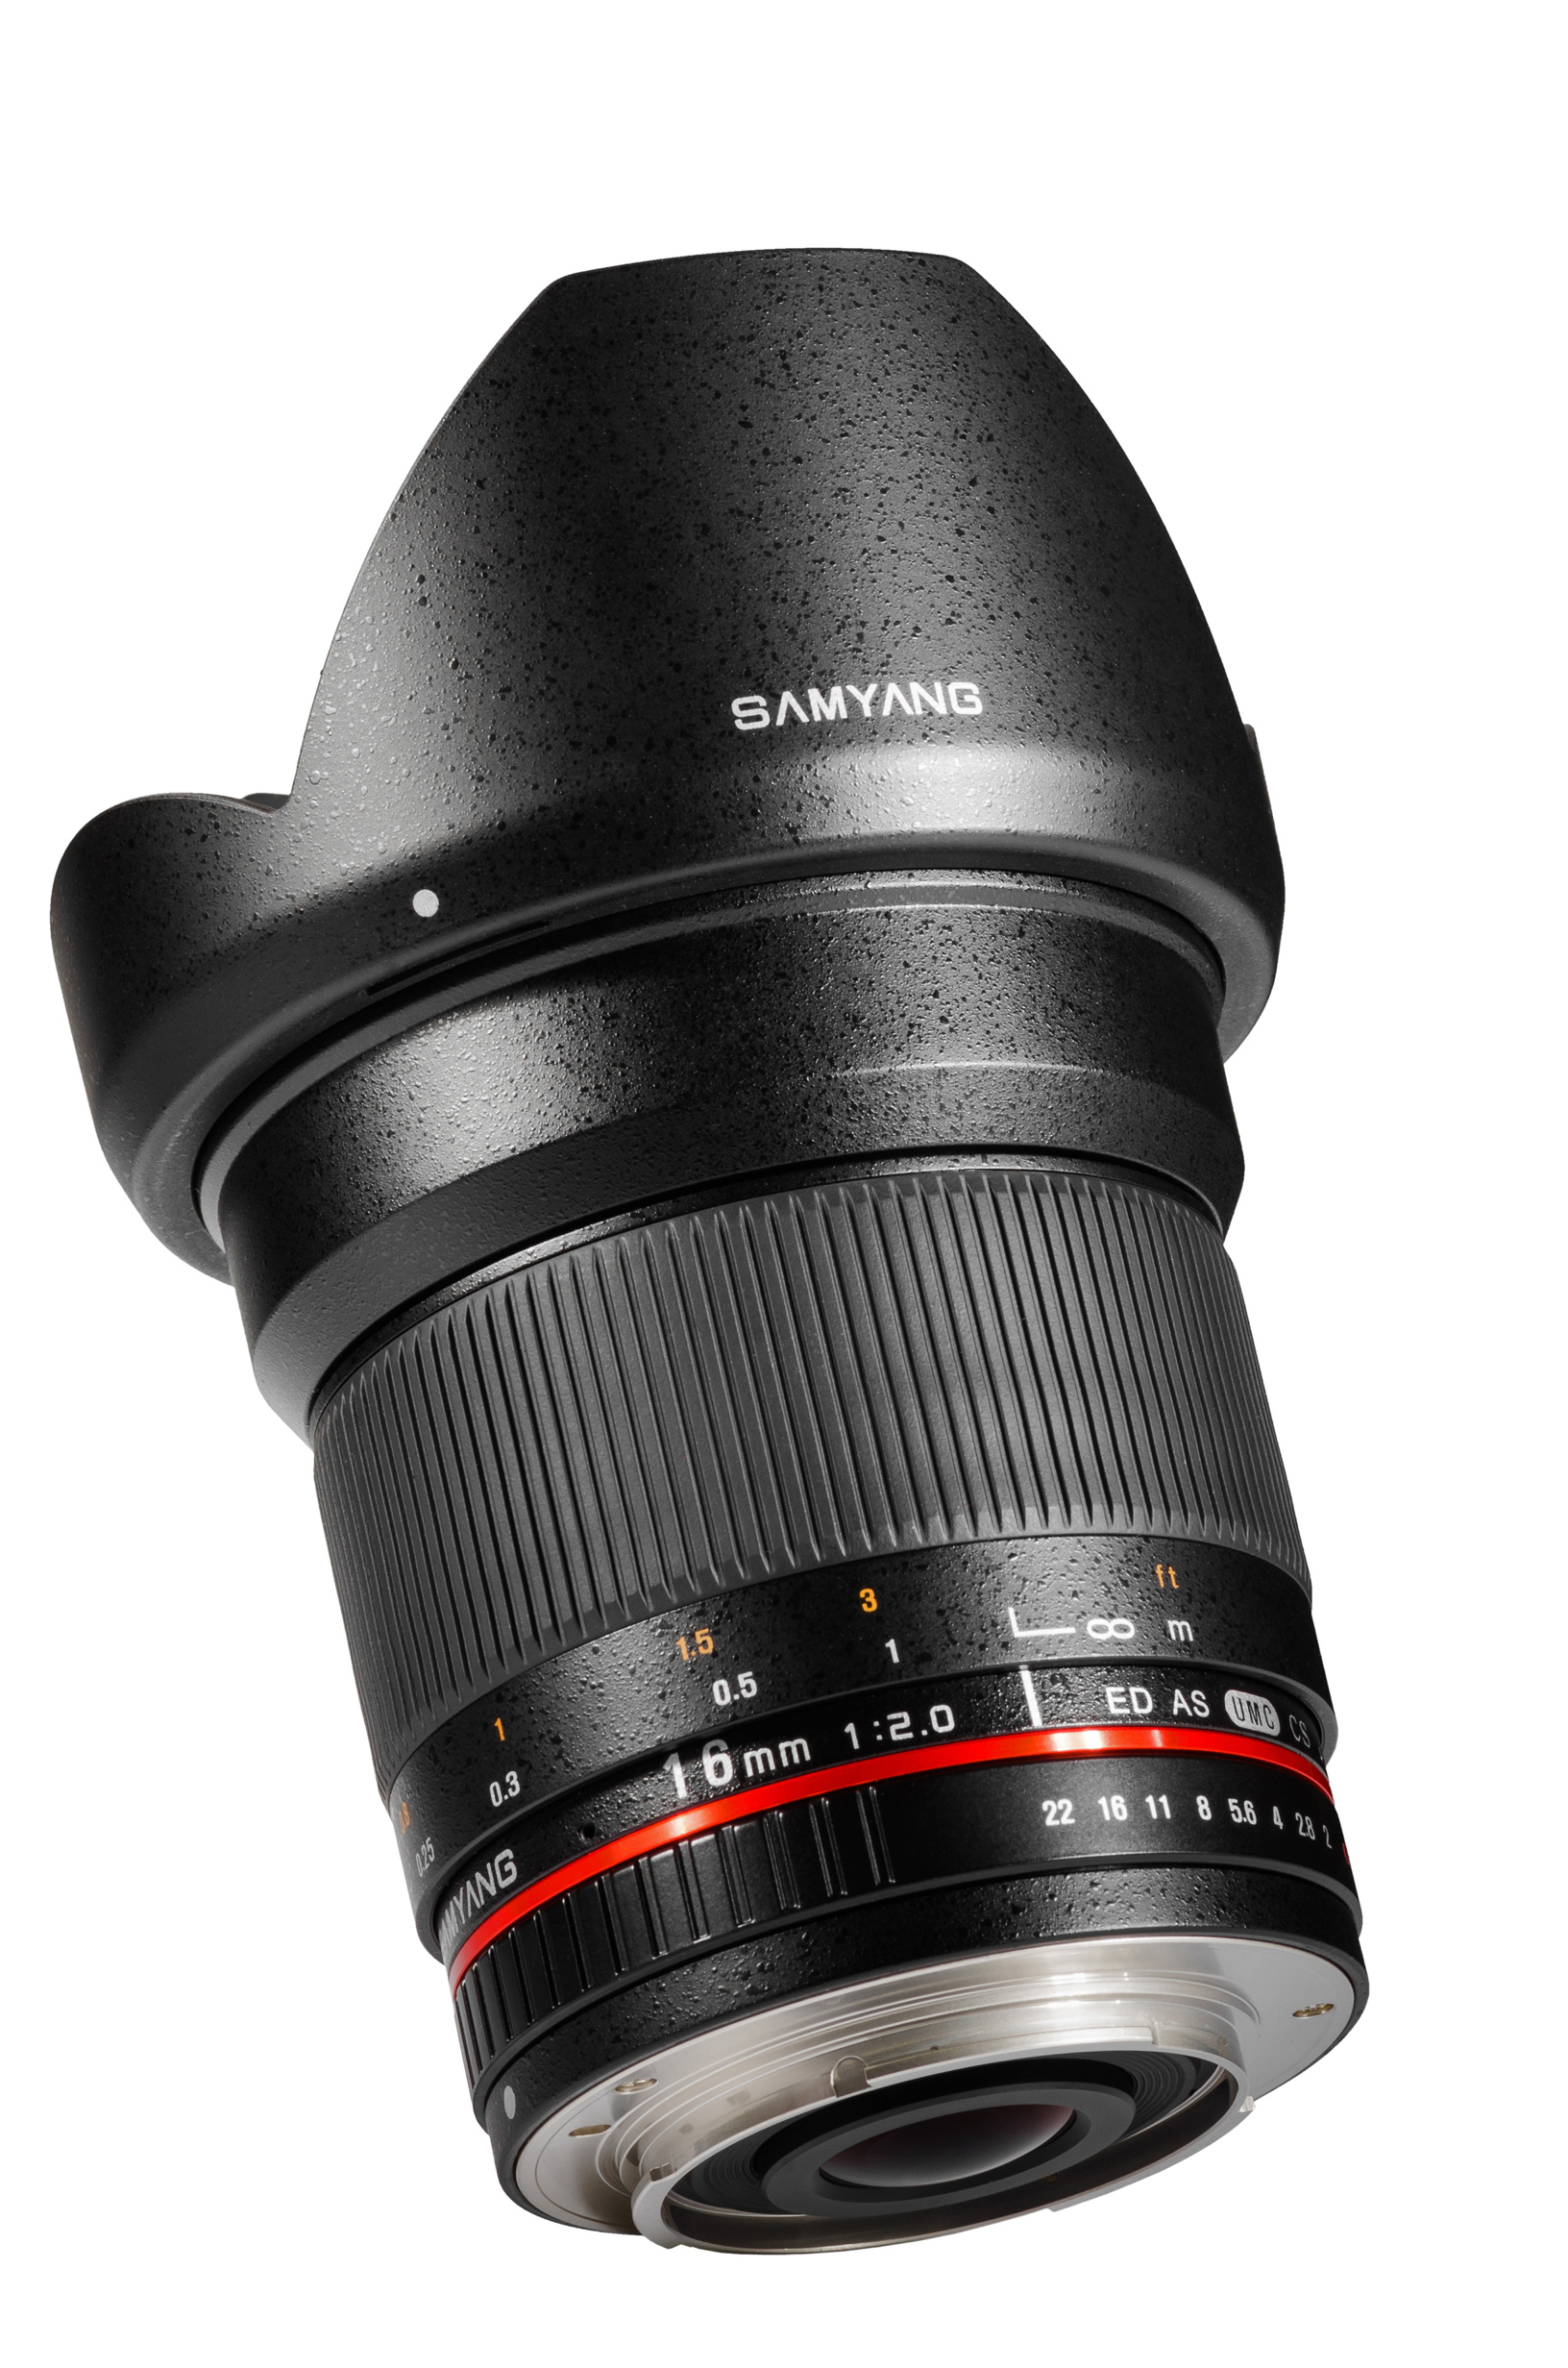 Samyang 16mm f/2.0 Fujifilm X